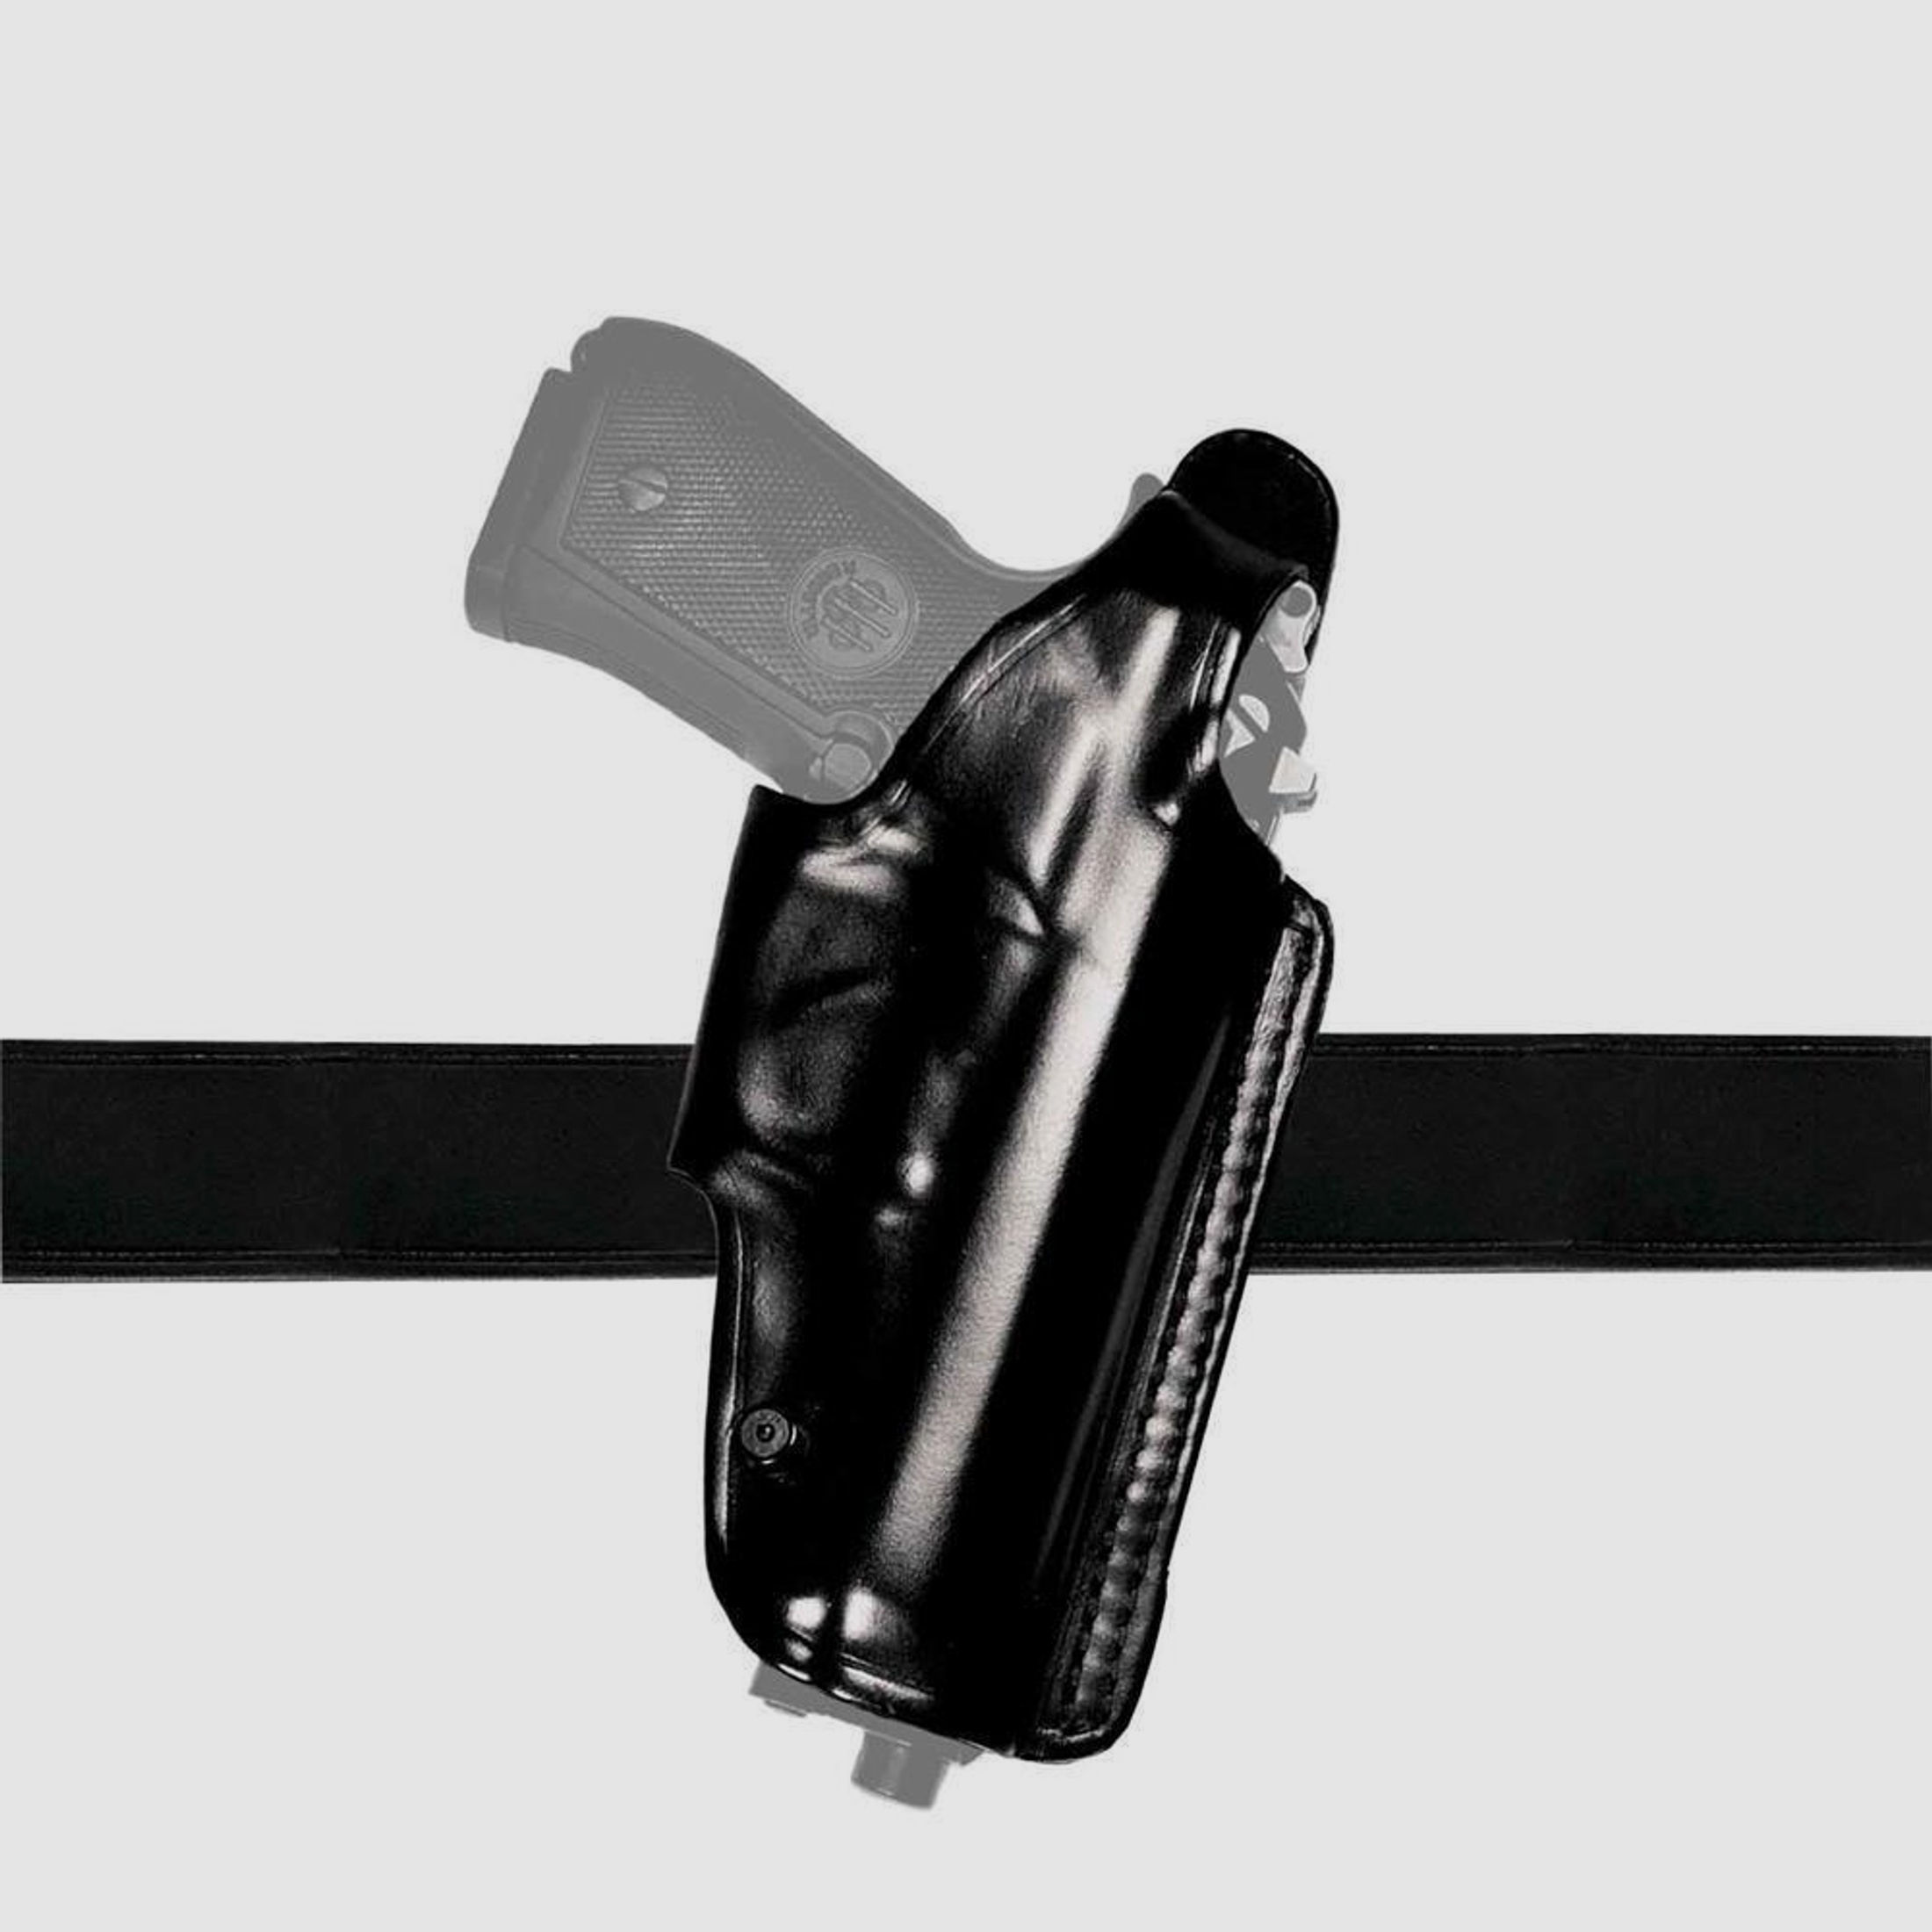 Mehrzweck-Schulterholster/Gürtelholster "Miami 2" Glock 43/43X Schwarz Rechtshänder